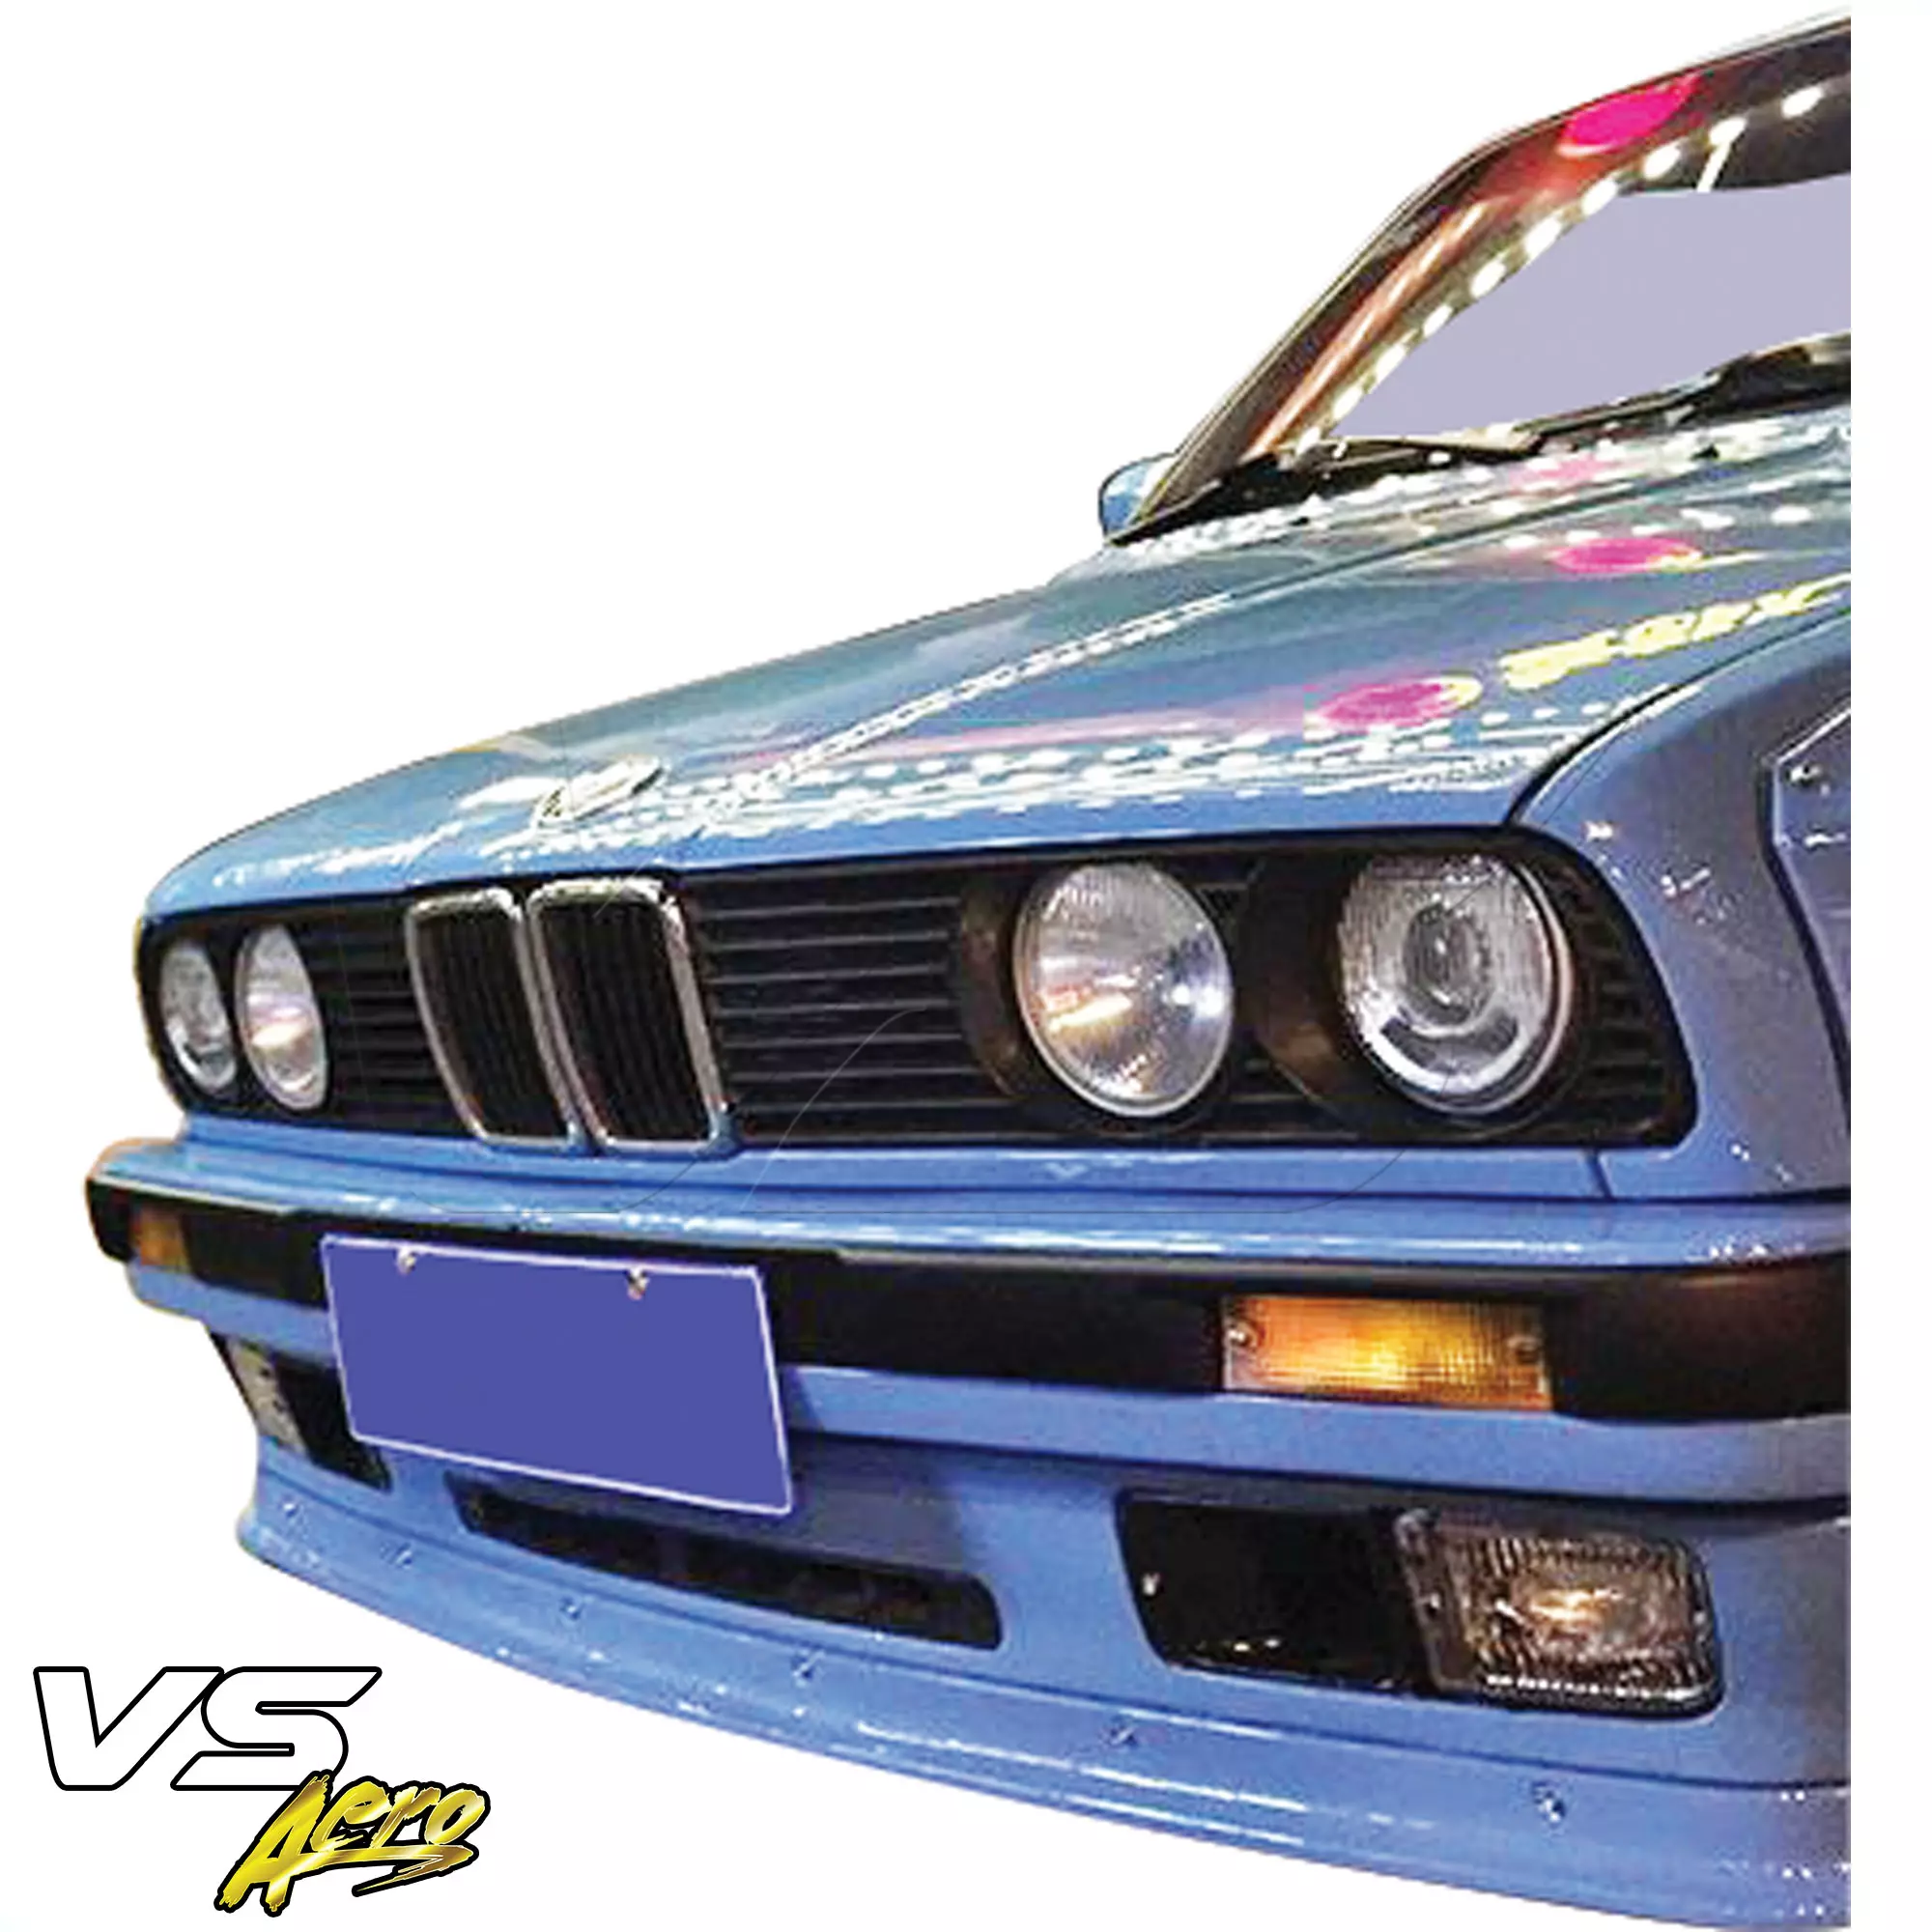 VSaero FRP TKYO Wide Body Front Lip > BMW 3-Series 318i 325i E30 1984-1991> 2dr Coupe - Image 3